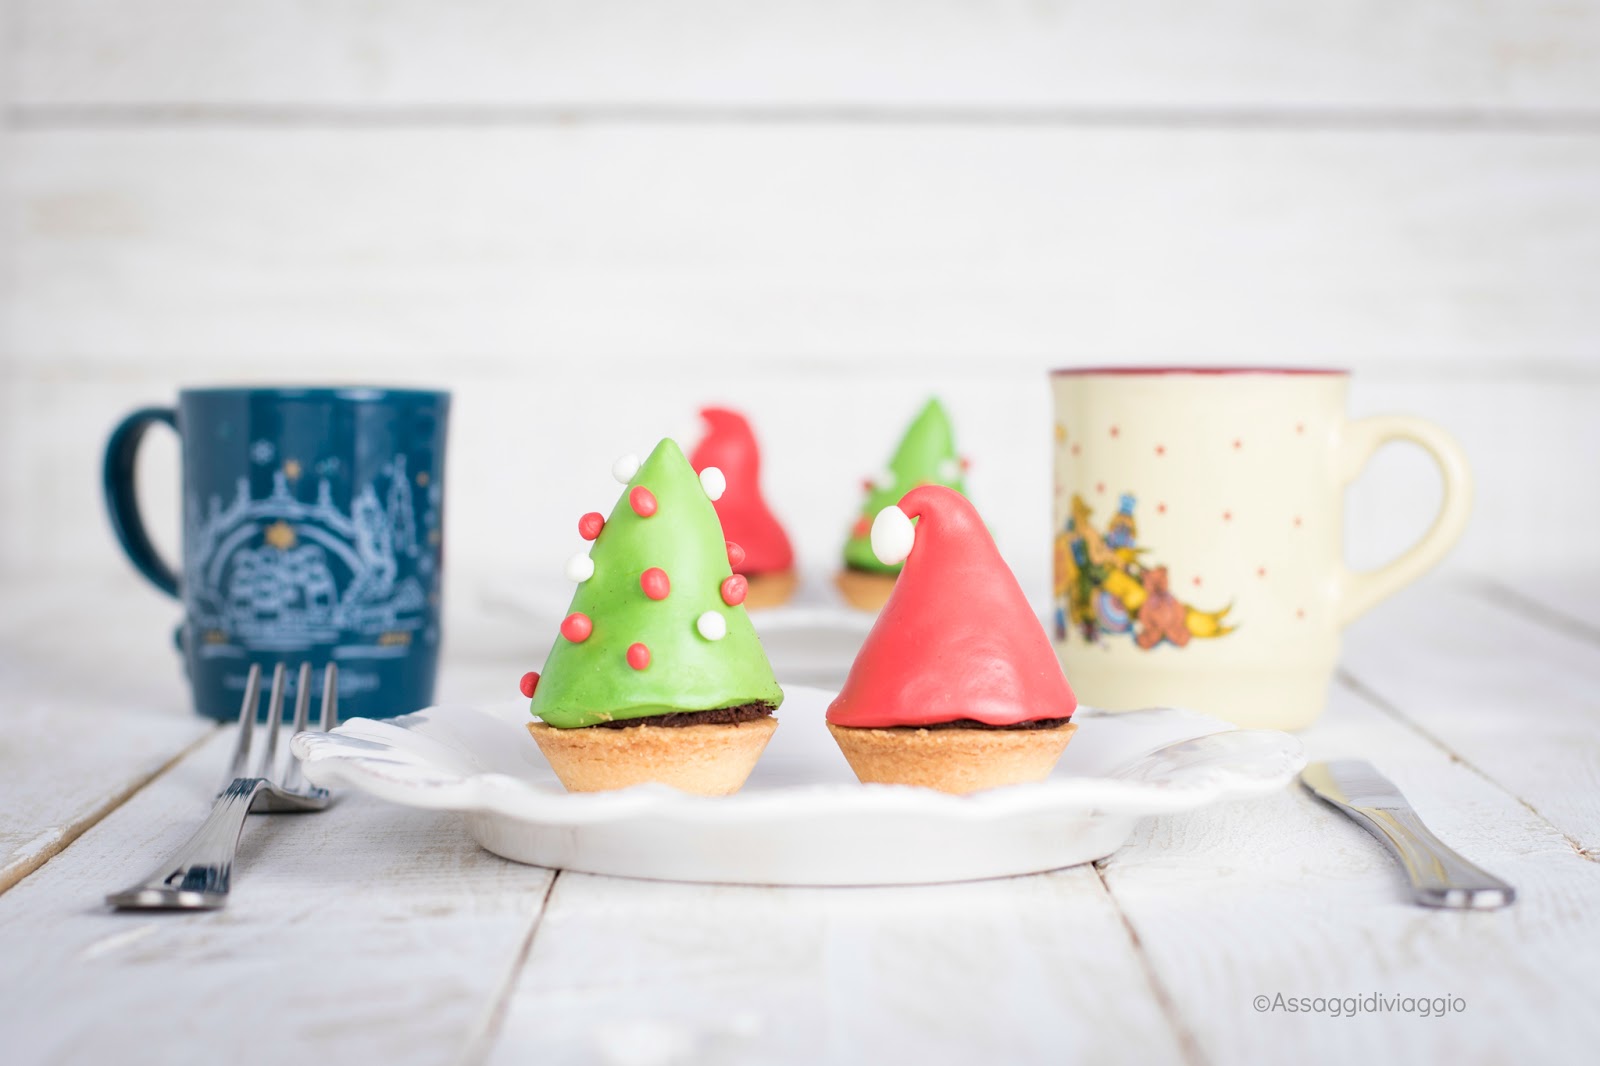 Segnaposto Natalizi Pasta Di Zucchero.Per La Tavola Di Natale I Segnaposto Commestibili Assaggi Di Viaggio